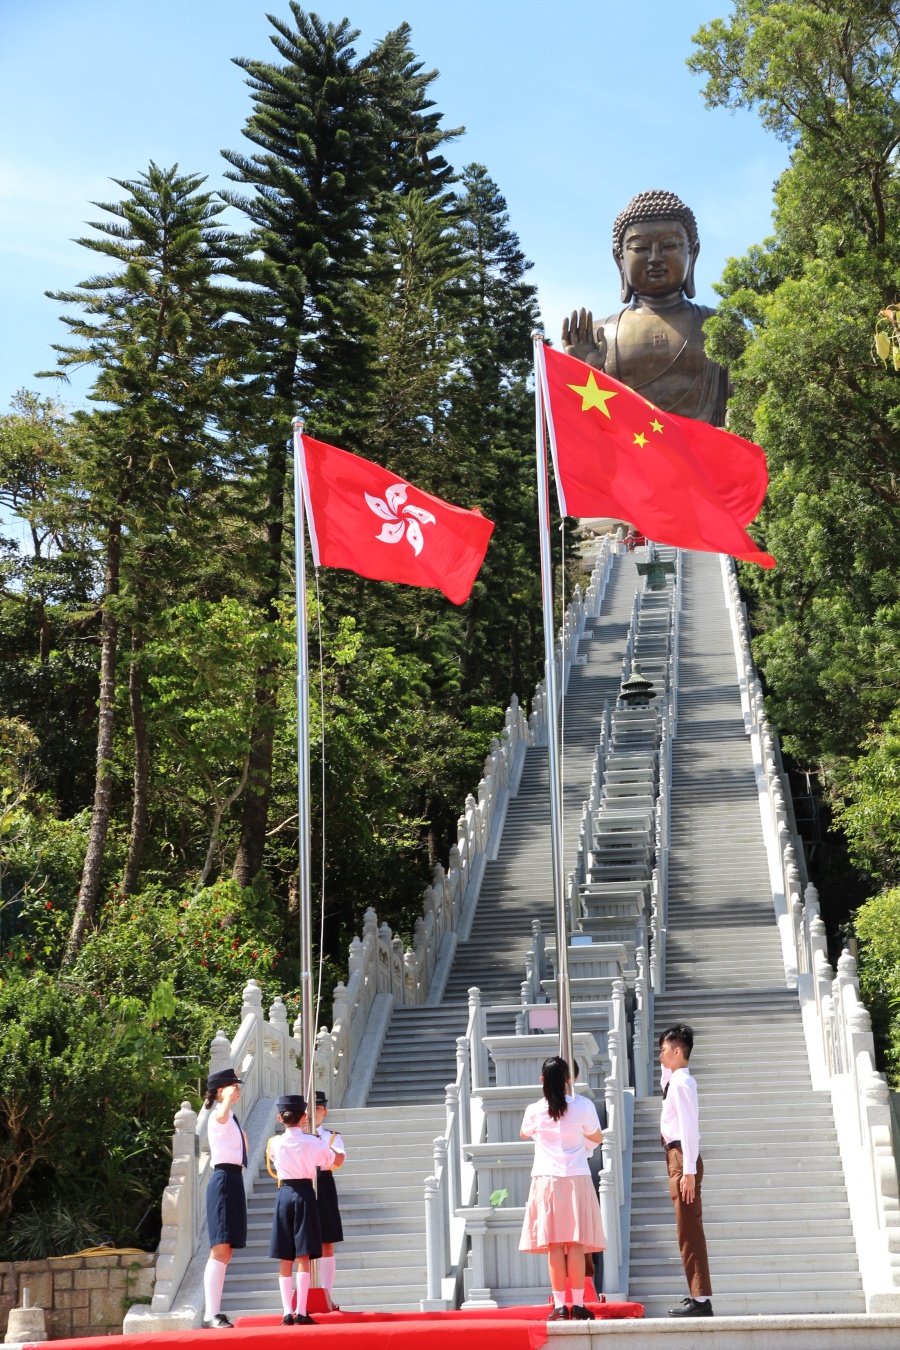 升旗隊升掛中華人民共和國國旗、香港特別行政區區旗。香港佛教聯合會